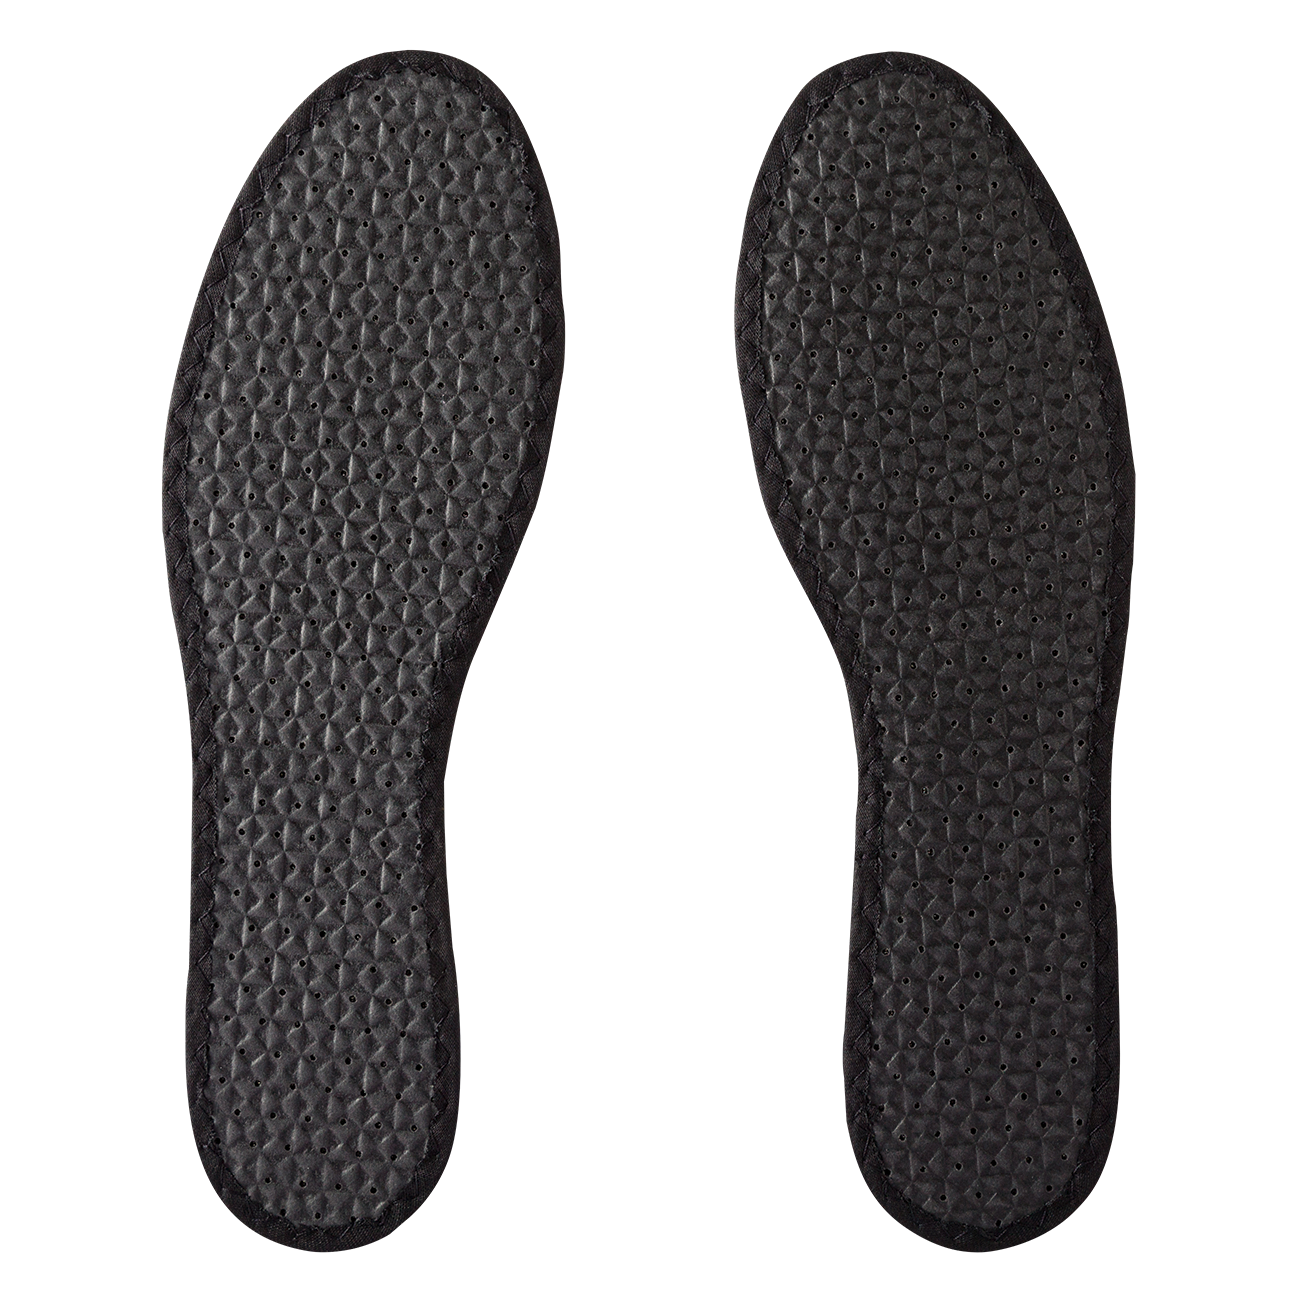 BERGAL | Aktivkohle / Activated Carbon - Einlegesohle für Schuhe (Art. 86947)